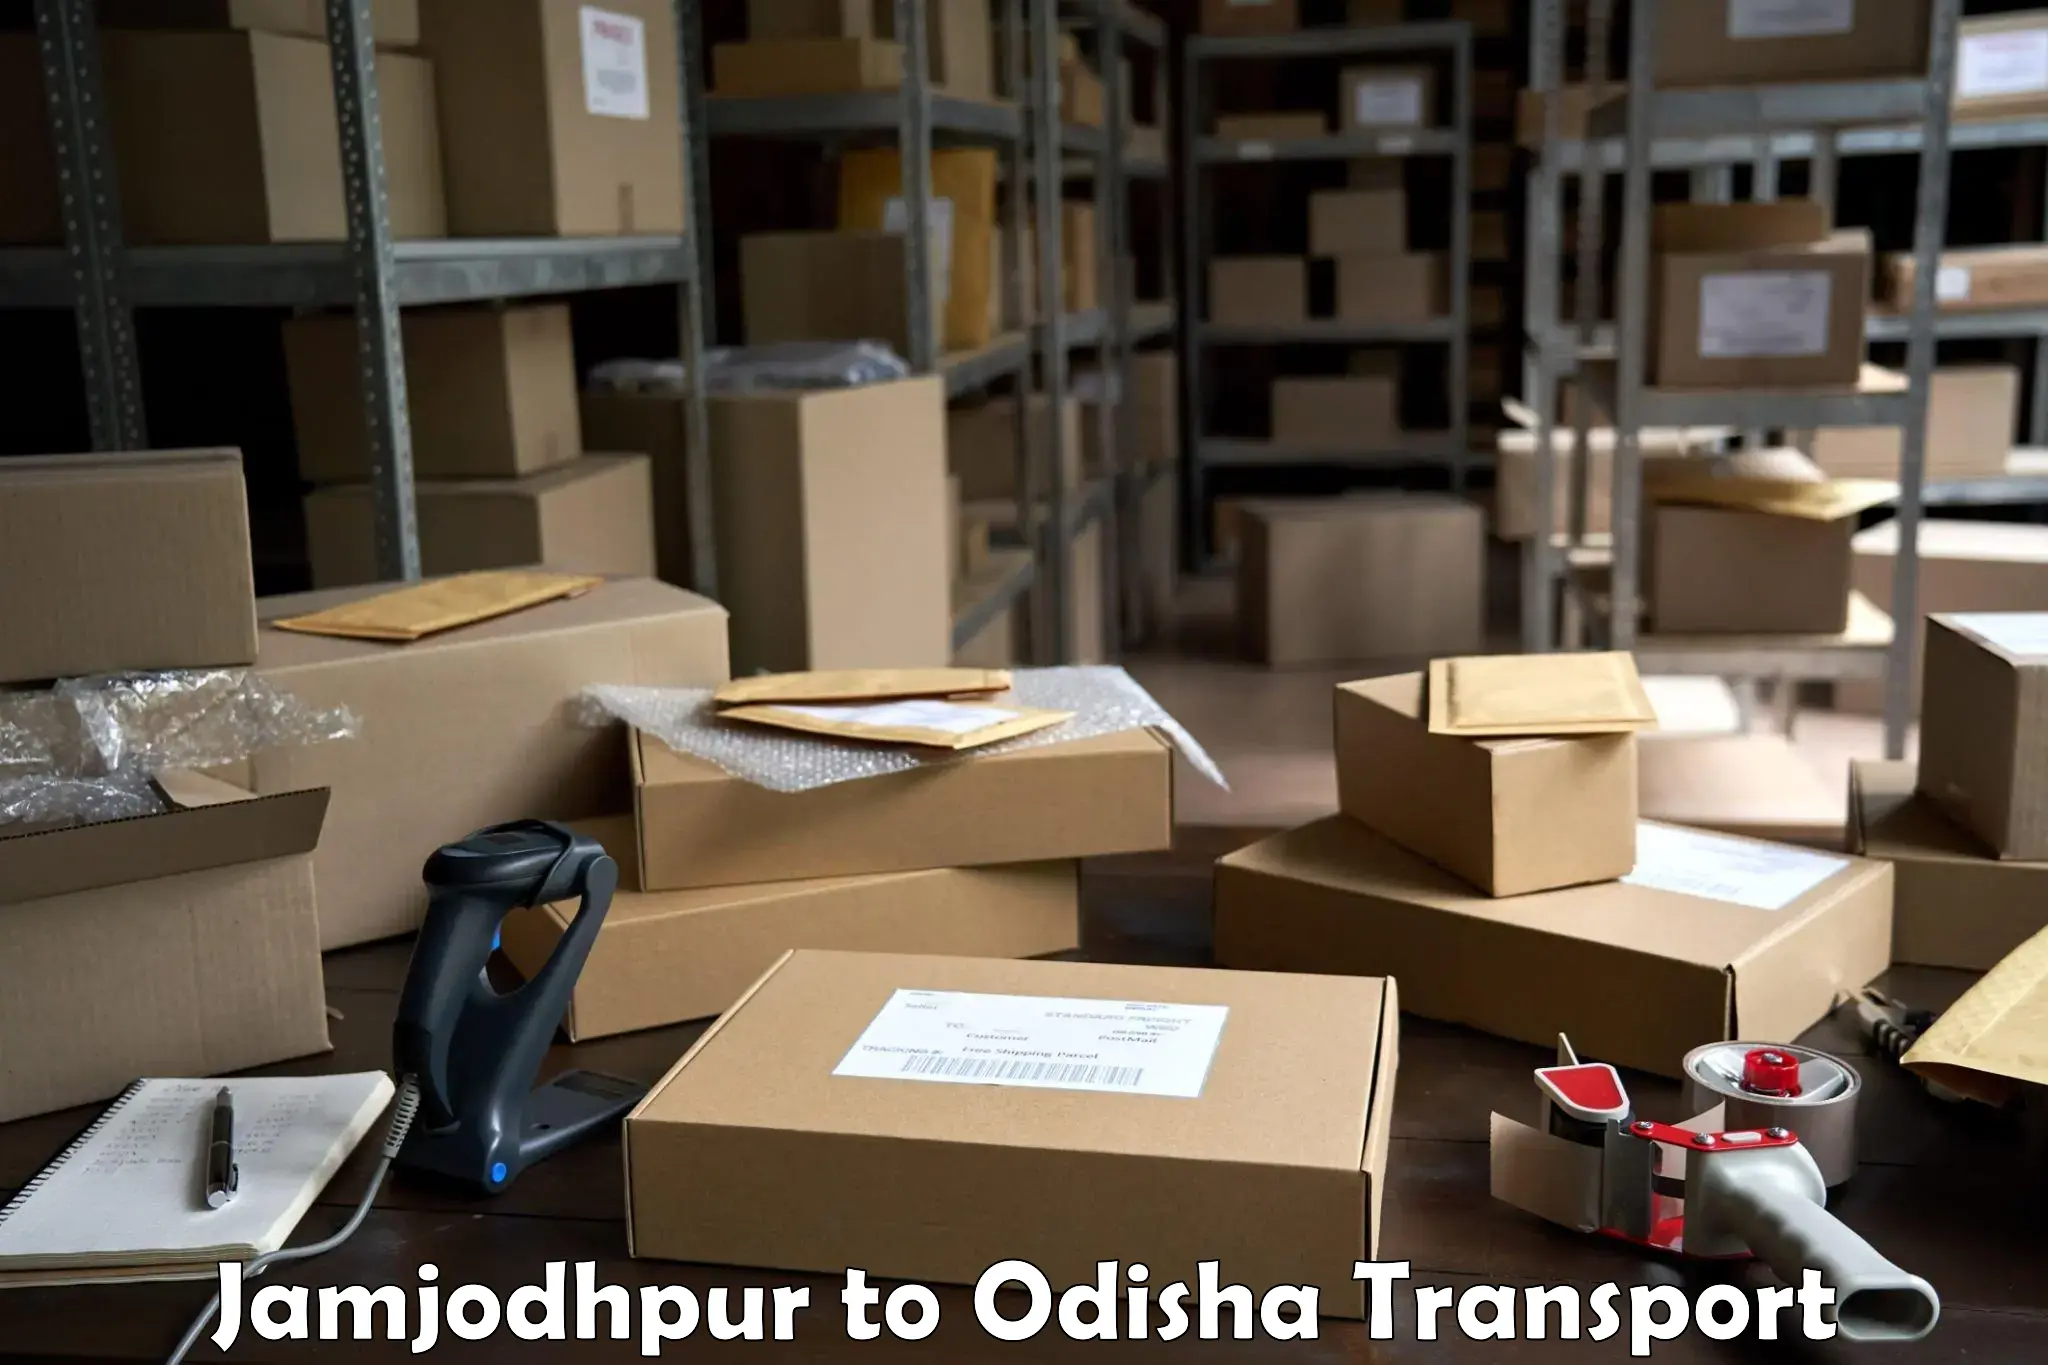 Daily parcel service transport Jamjodhpur to Puri